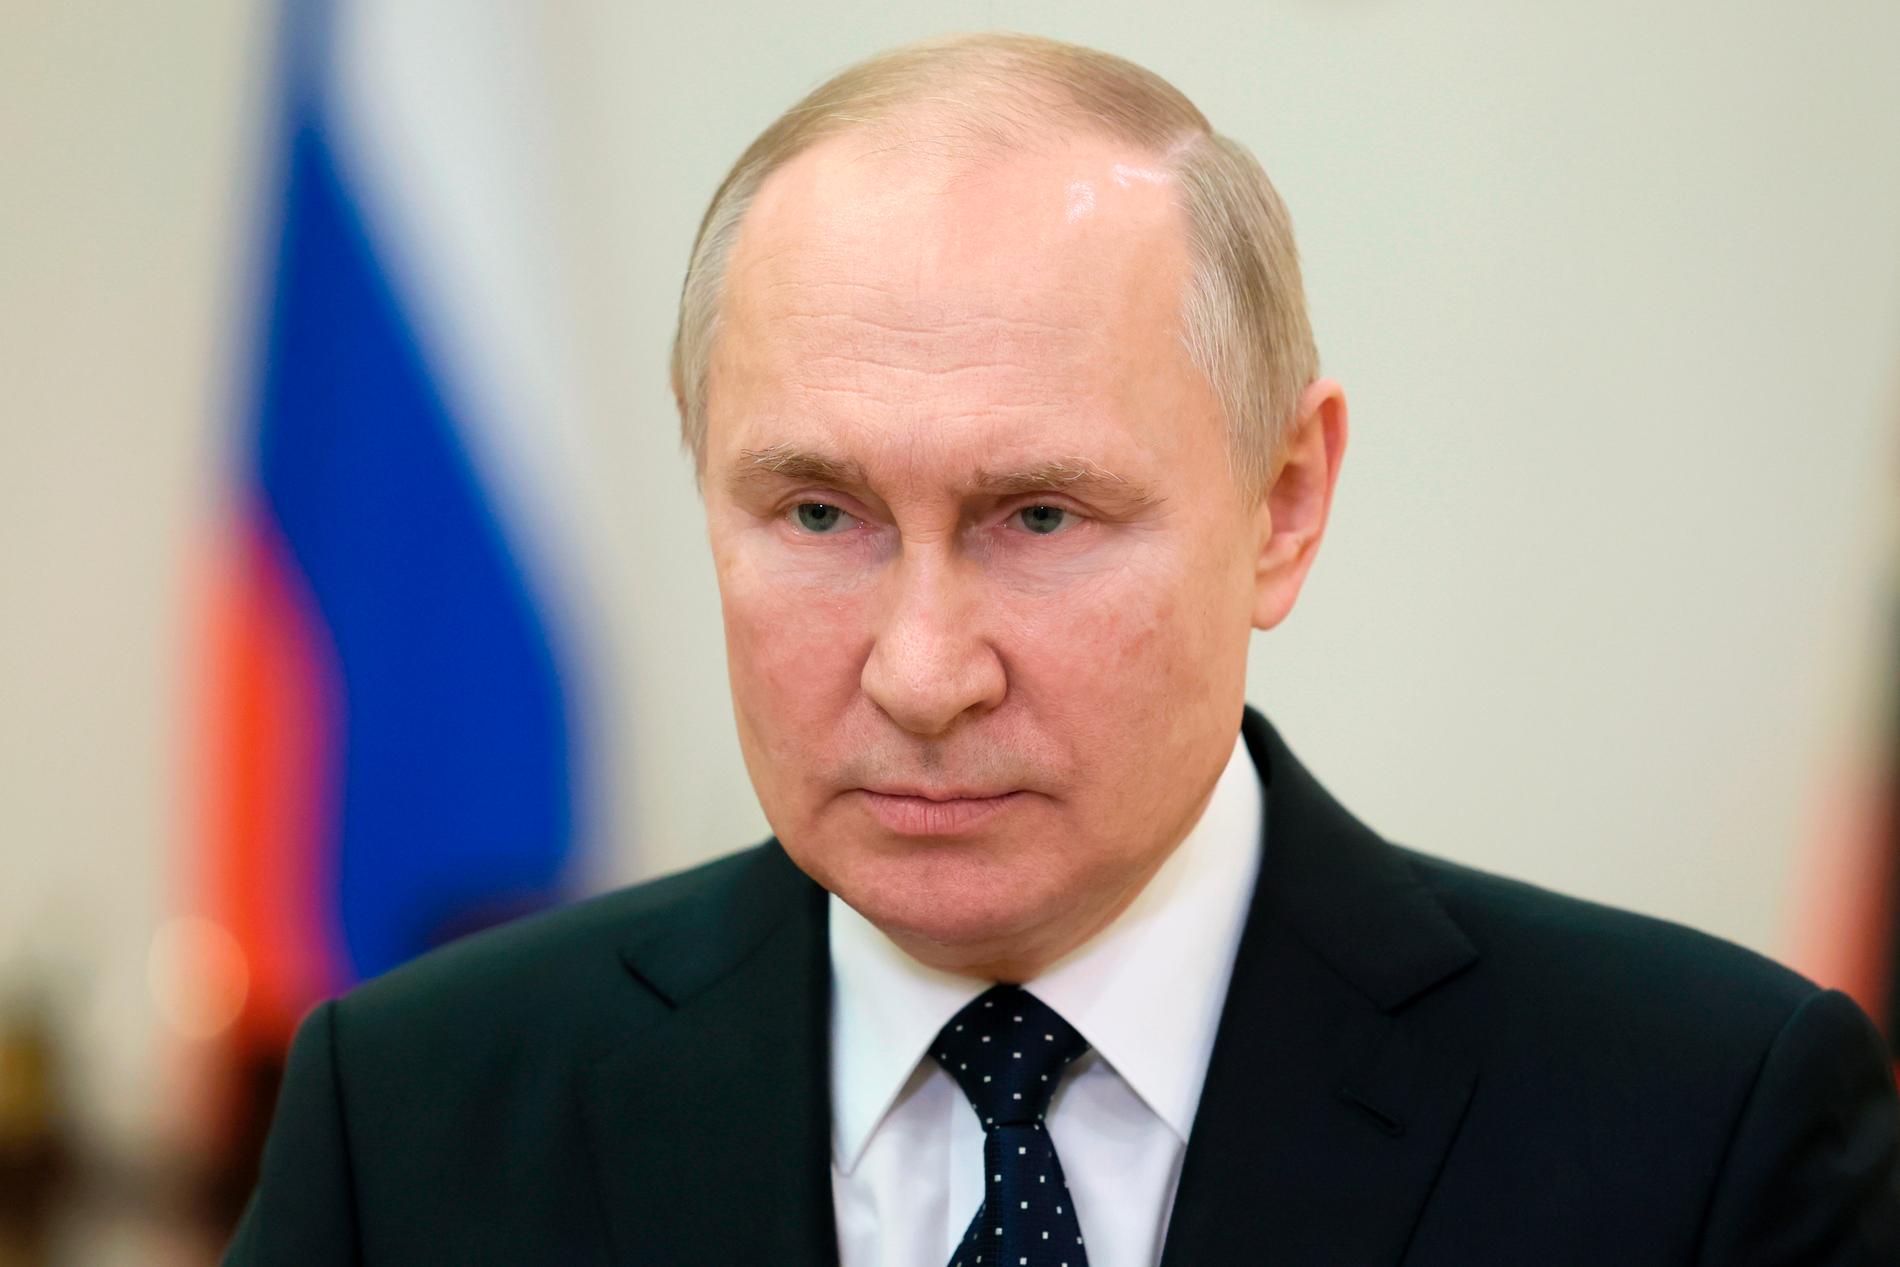 För att sanktionerna på allvar ska hämma Putins förmåga att föra krig måste så gott som hela världen ställa upp på dem, skriver Wolfgang Hansson.